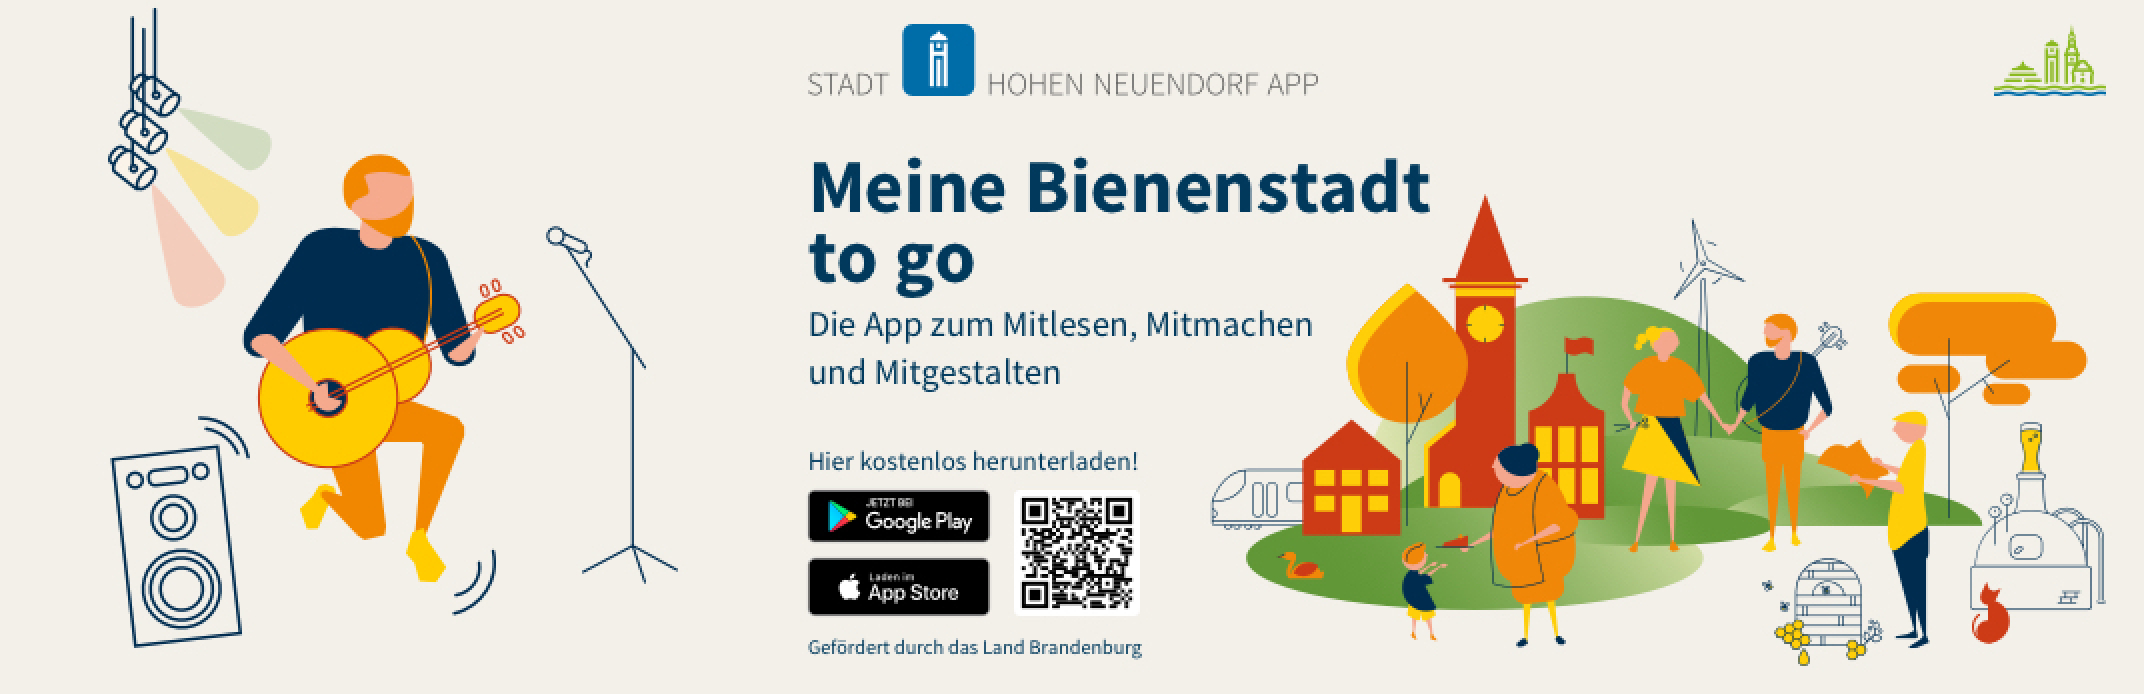 "Stadt Hohen Neuendorf" App